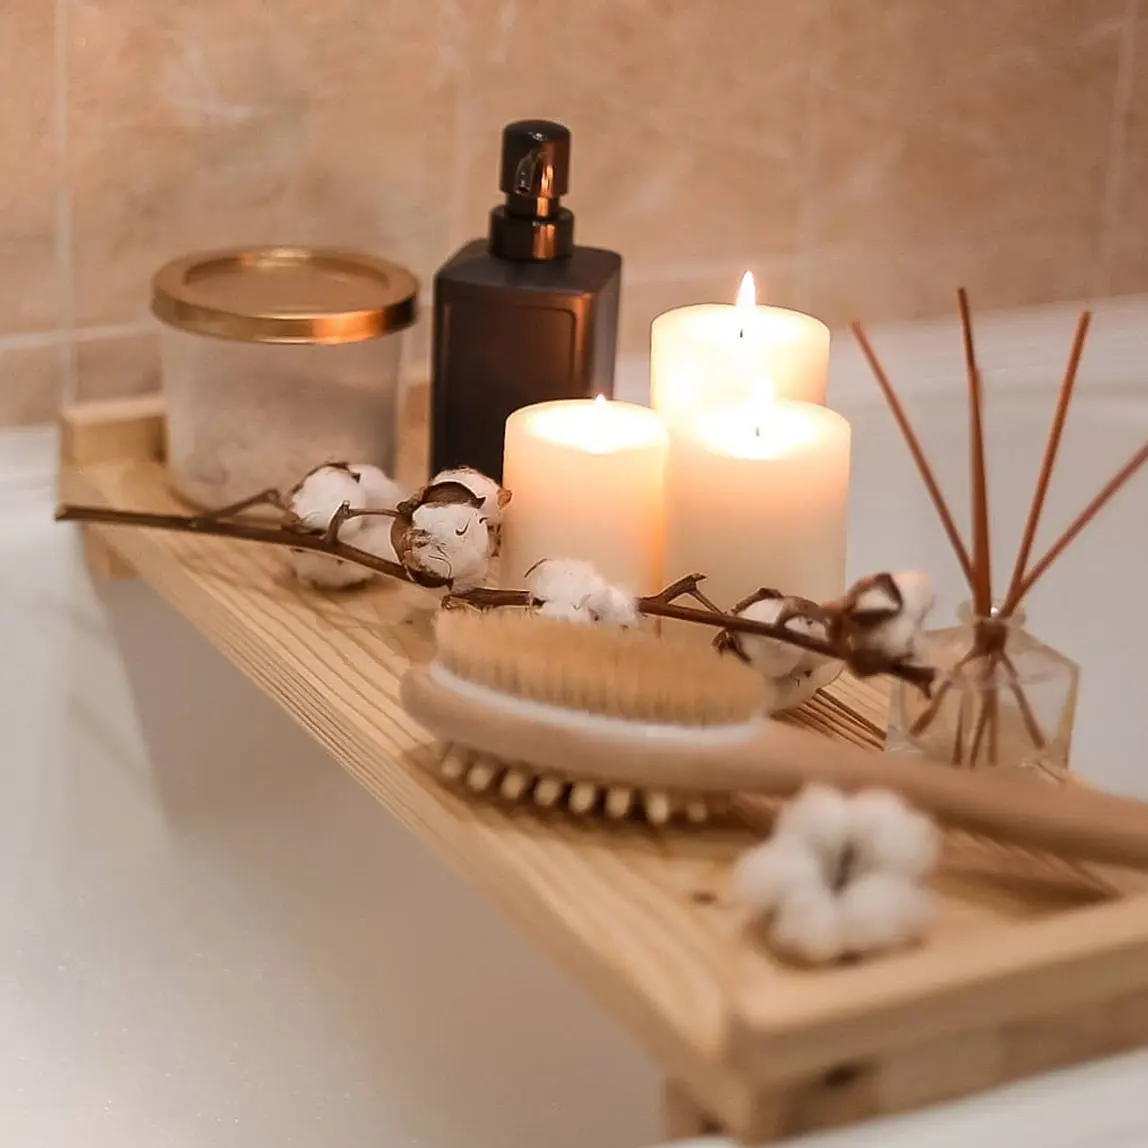 Как легко сделать деревянную полку в ванную комнату своими руками — все “за” и “против”